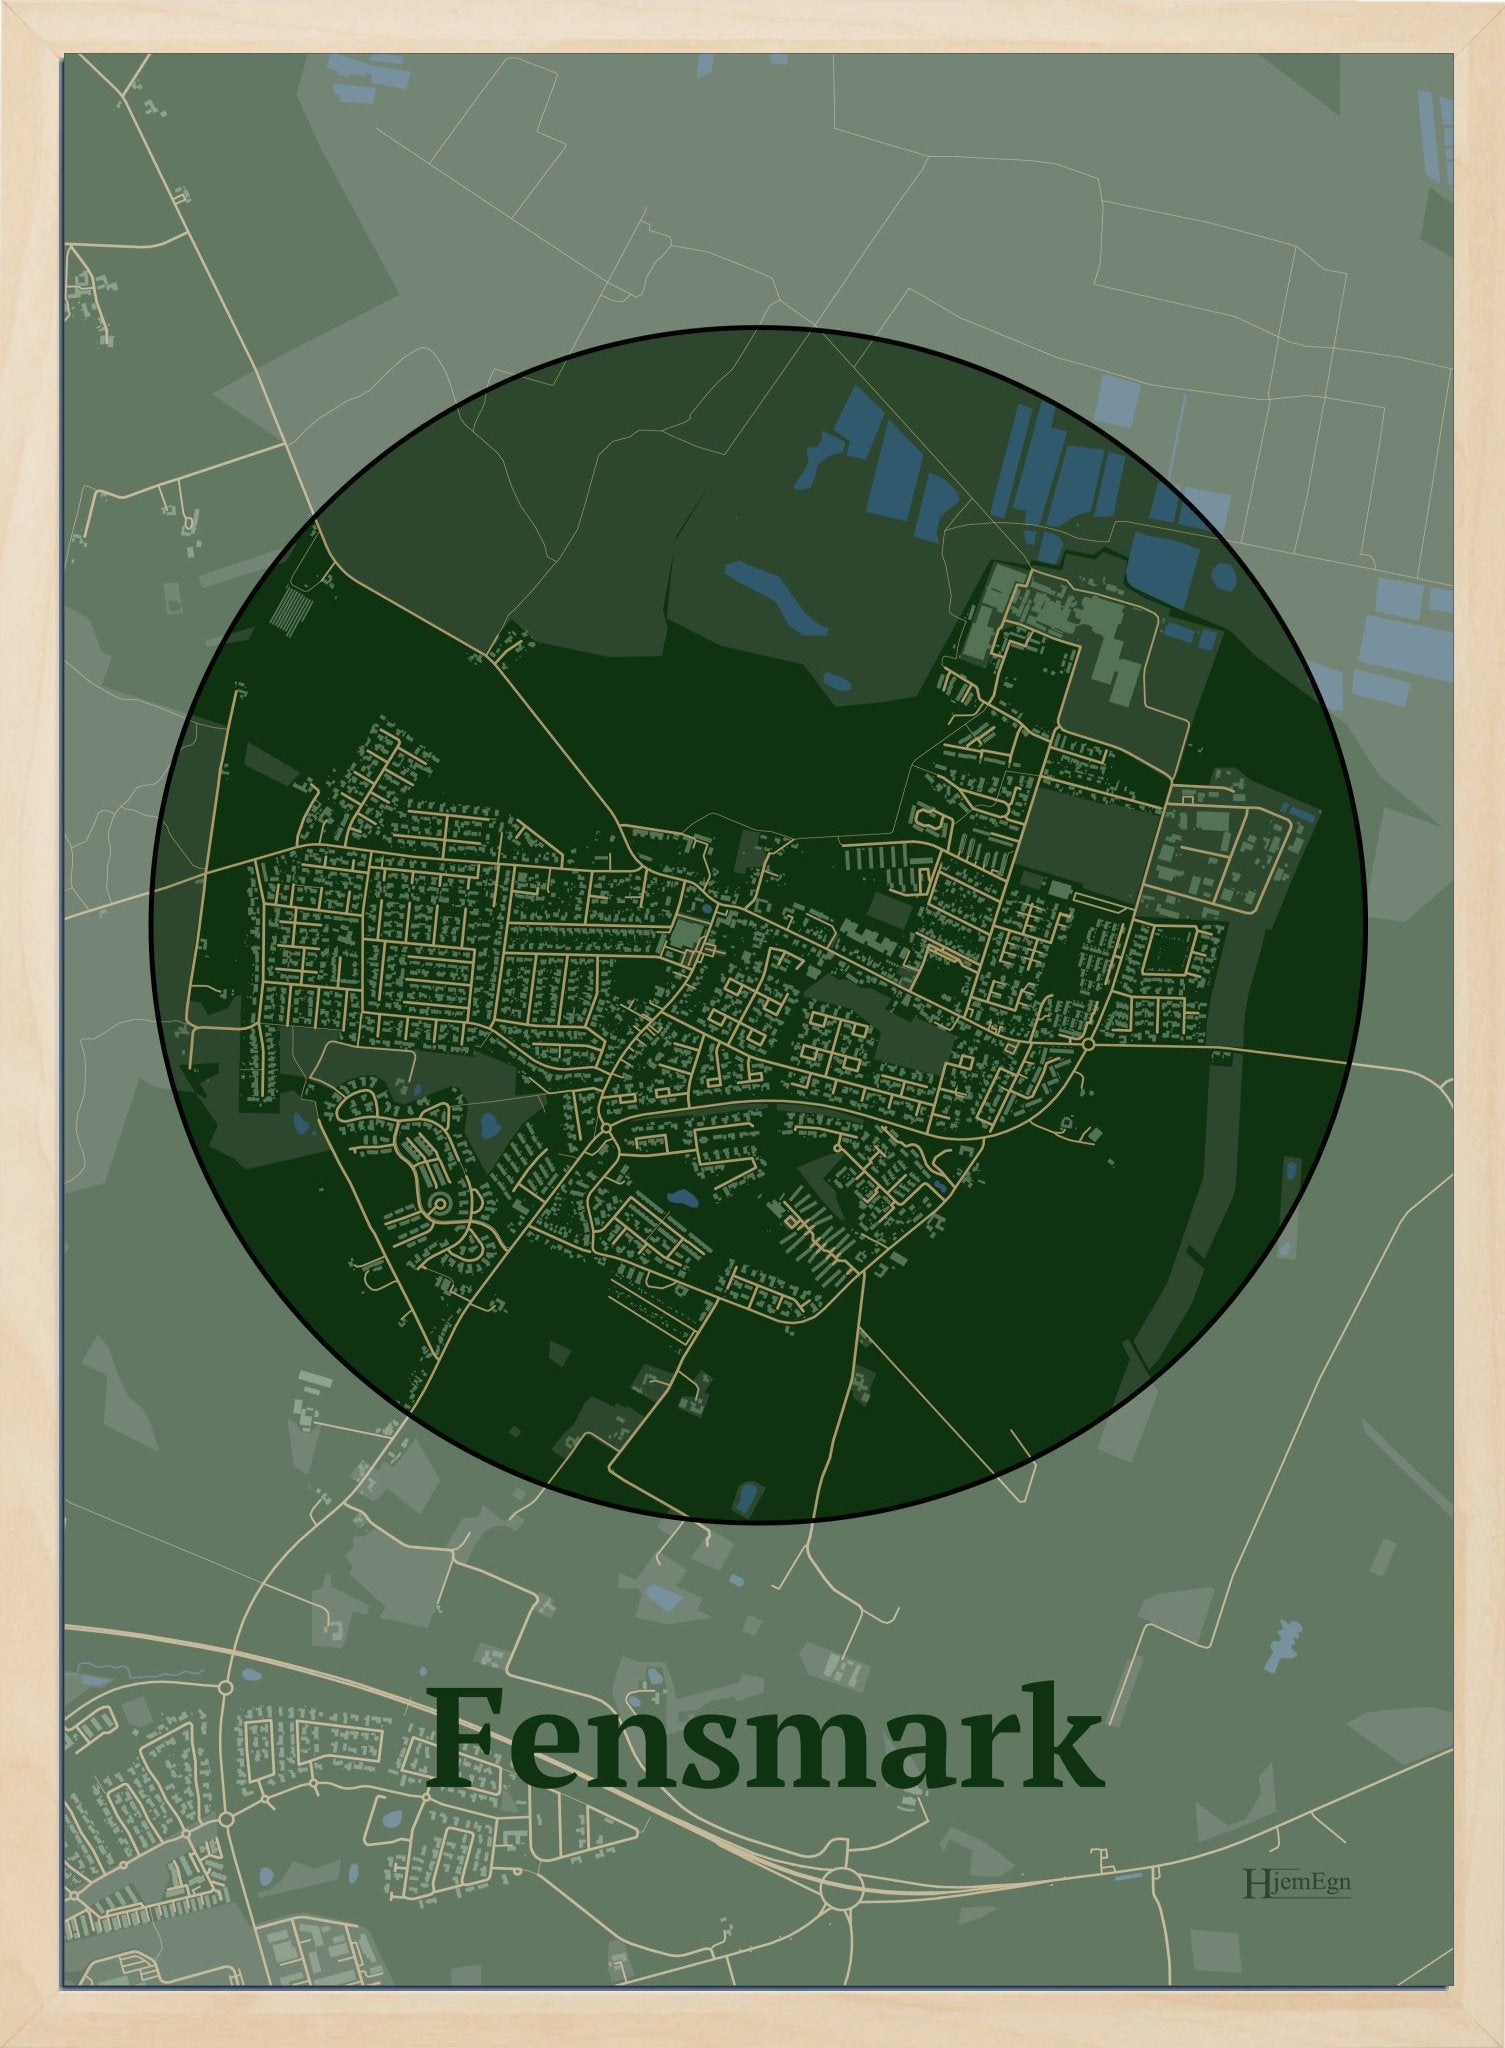 Fensmark plakat i farve mørk grøn og HjemEgn.dk design centrum. Design bykort for Fensmark